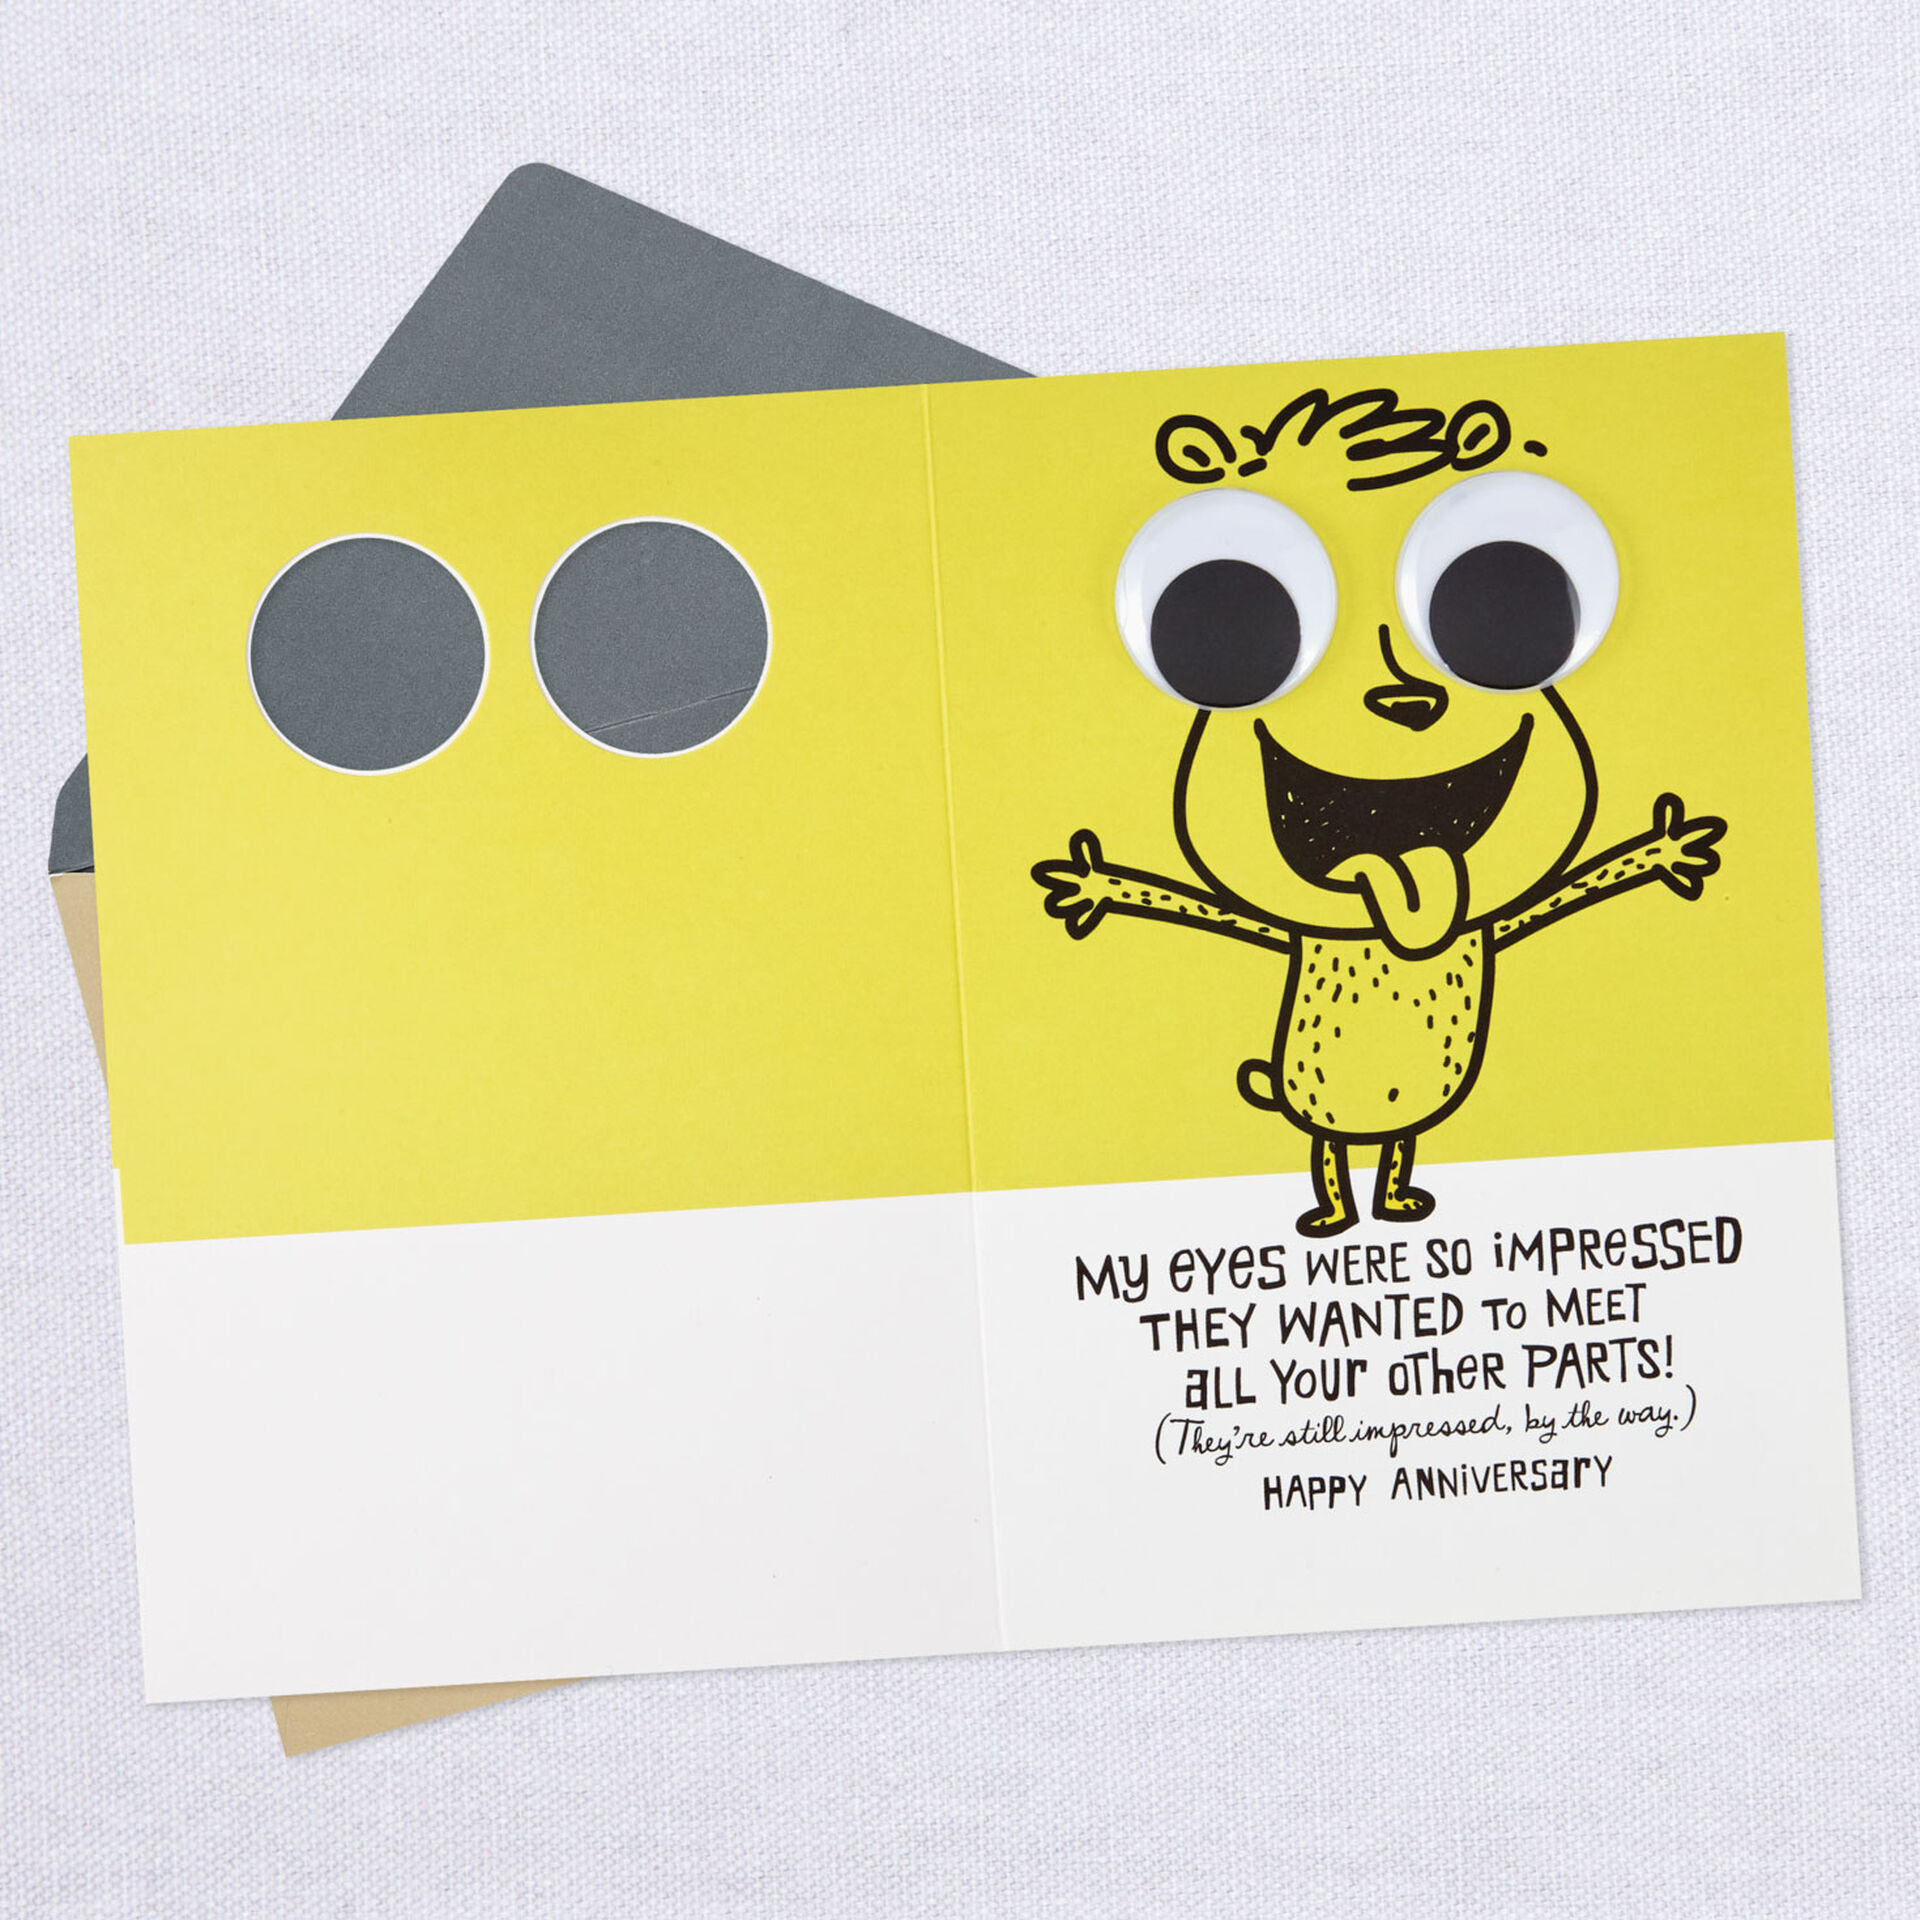 Googly-Eyed-Couple-Anniversary-Card_399AVY2833_03